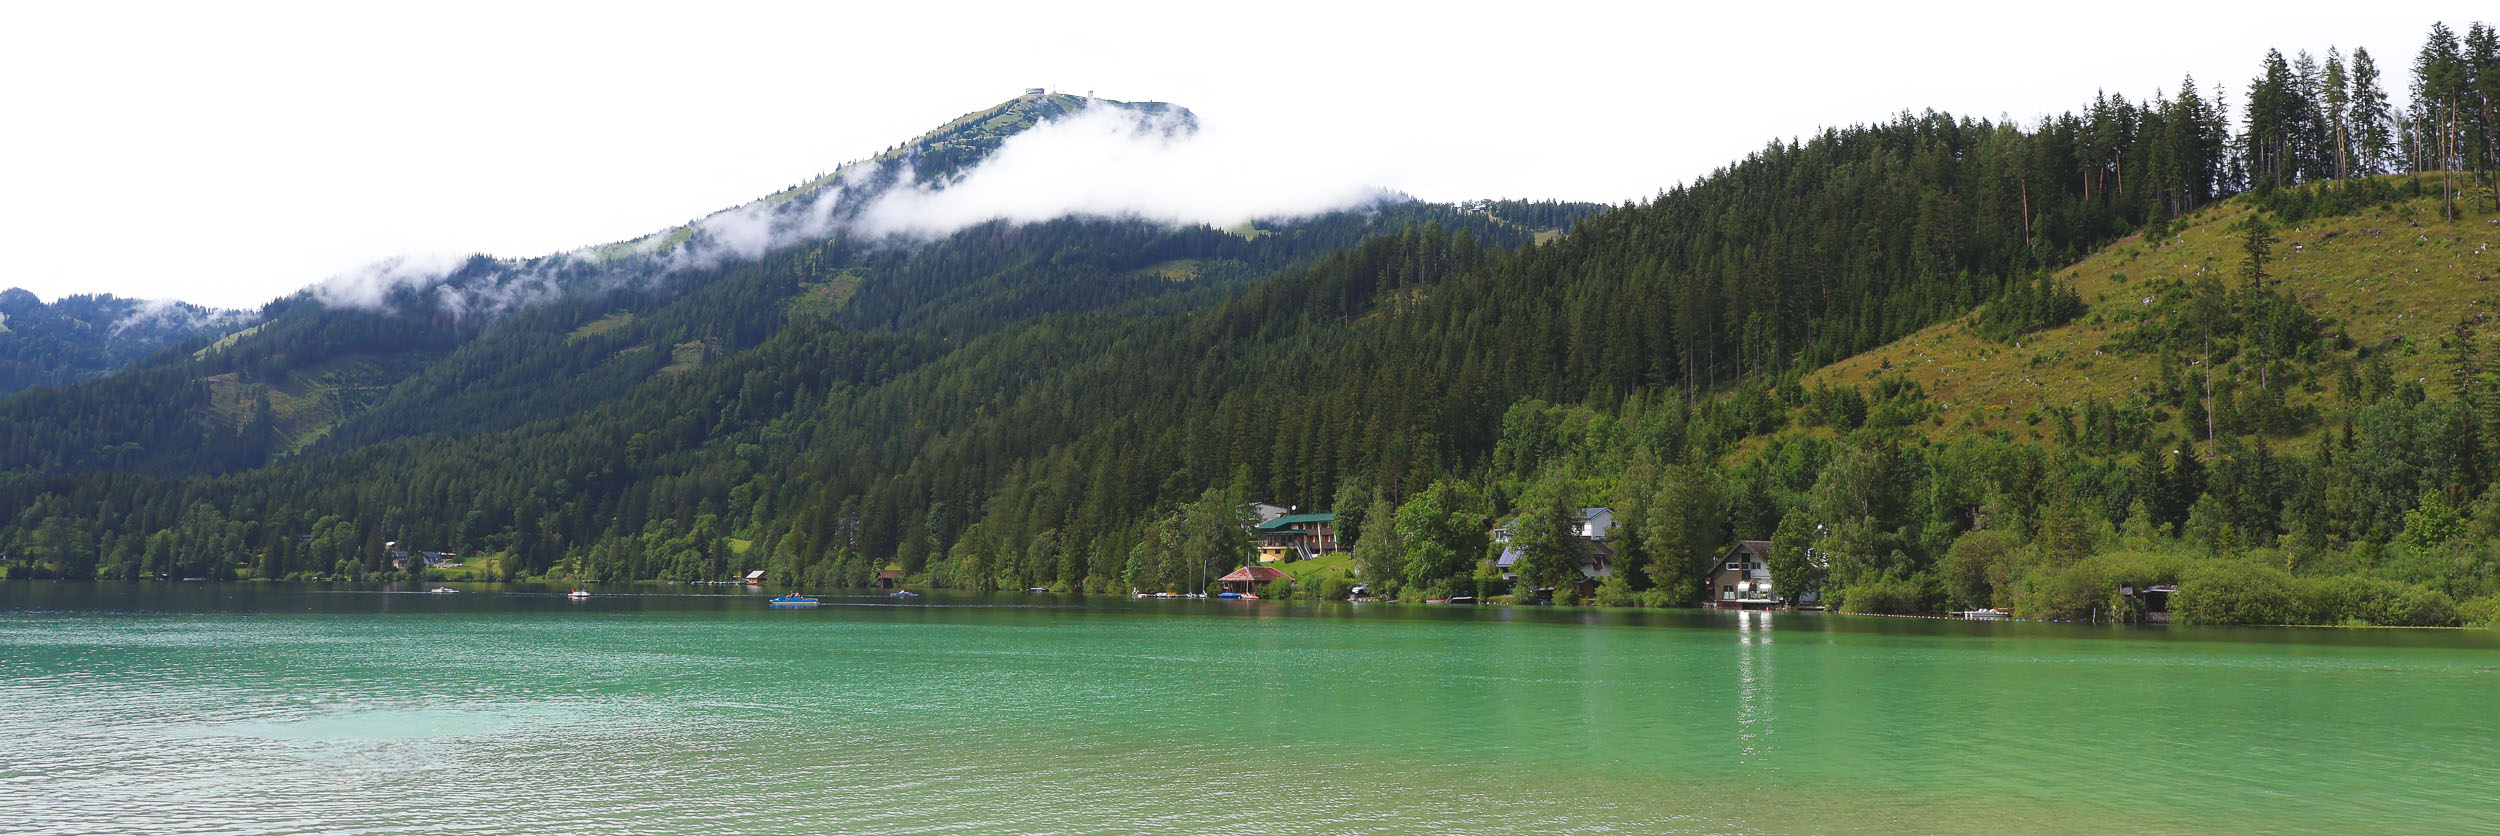 Erlaufsee panorama, Austria